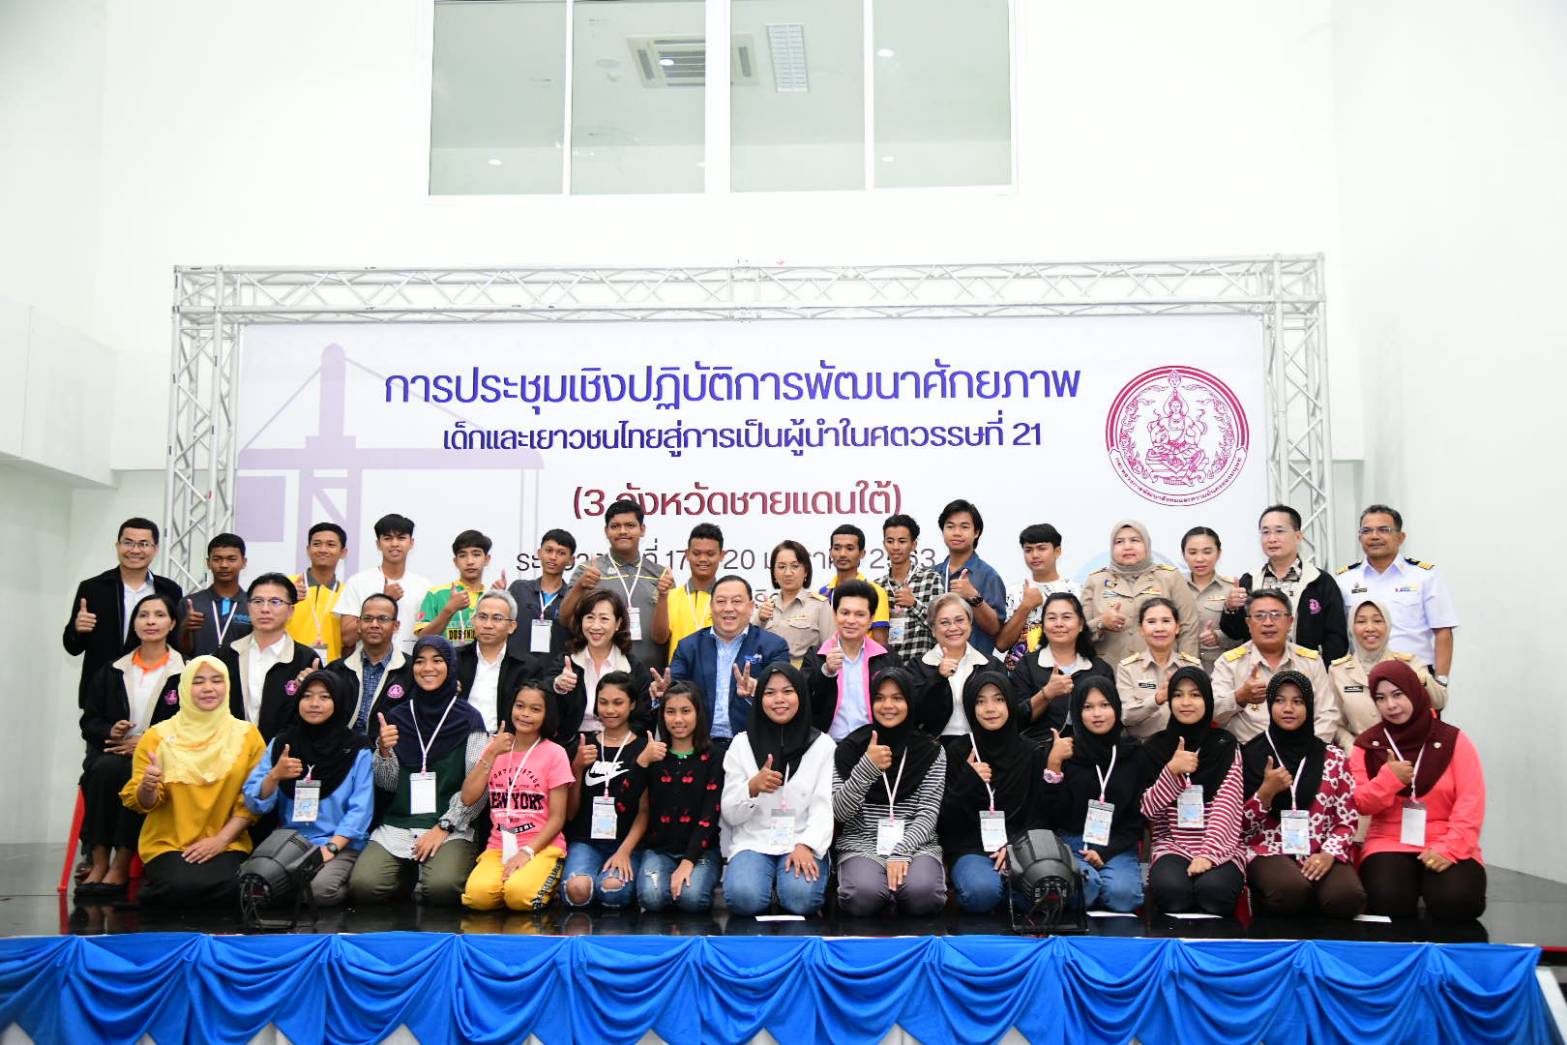 รองอผส. ลงพื้นที่เยี่ยมเยียนกลุ่มเป้าหมายจังหวัดนราธิวาส พร้อมร่วมพิธีปิดการประชุมเชิงปฏิบัติการพัฒนาศักยภาพเด็กและเยาวชนไทย สู่การเป็นผู้นำในศตวรรษที่ ๒๑ (๓ จังหวัดชายแดนใต้)